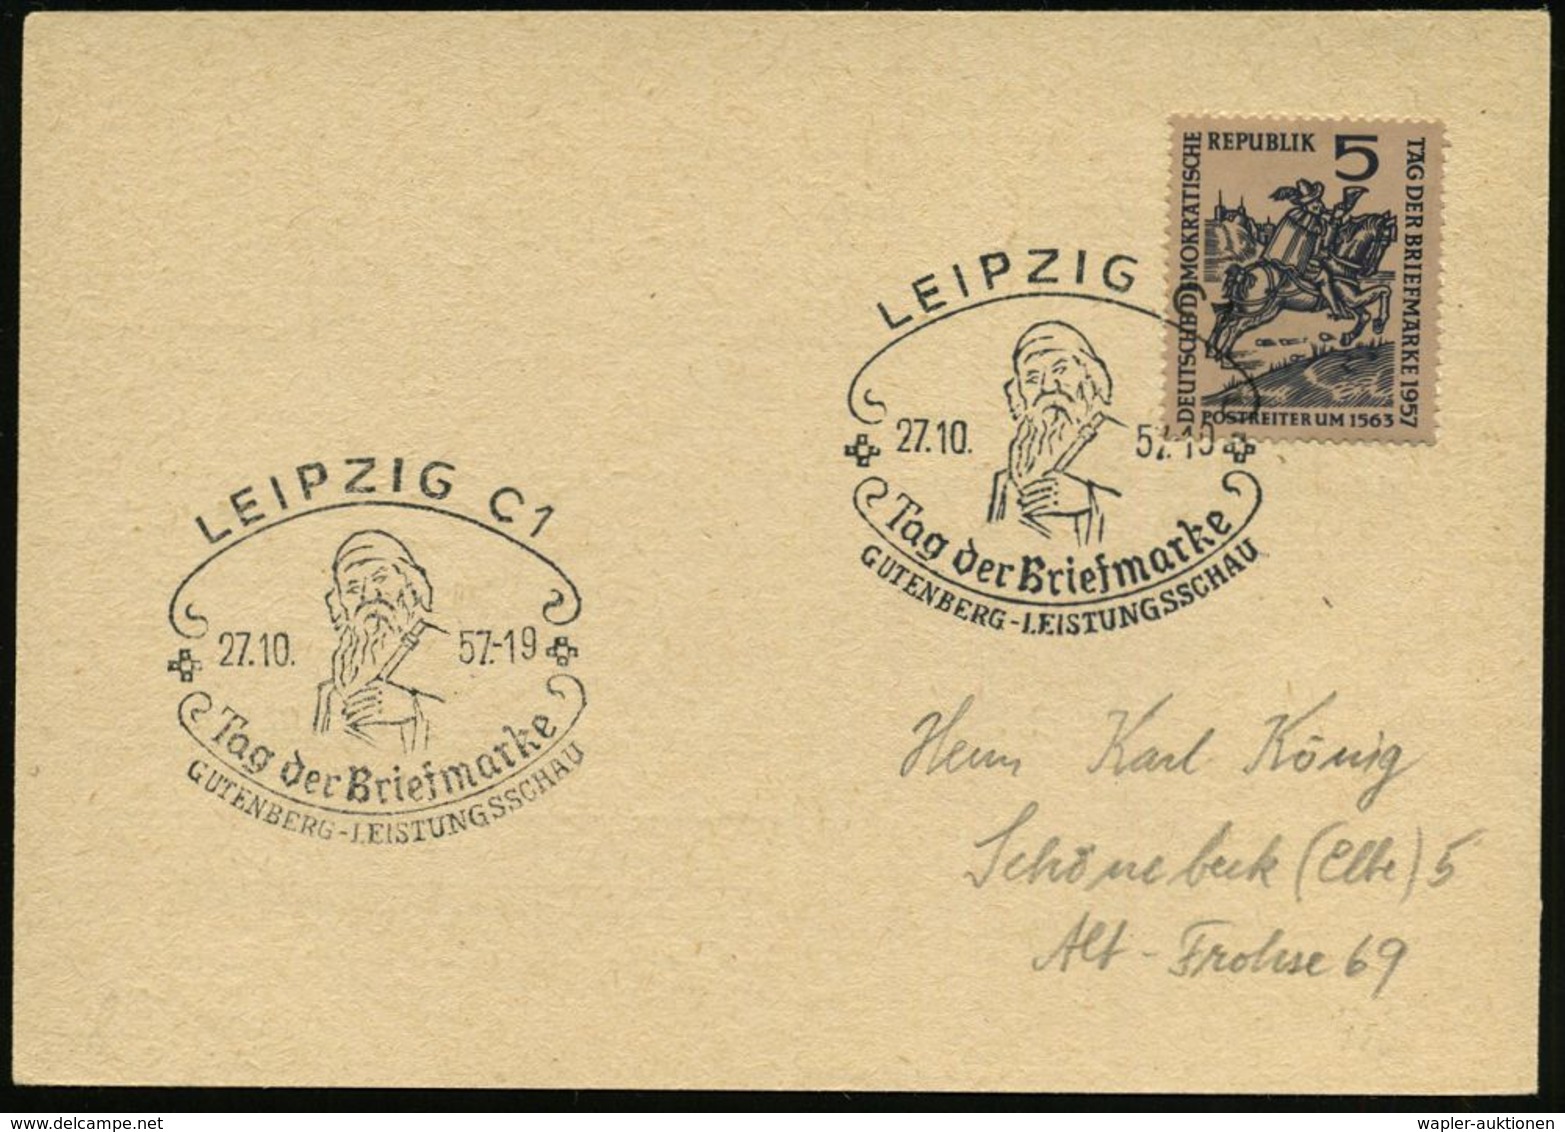 GUTENBERG & DRUCK-PIONIERE : LEIPZIG C1/ Tag Der Briefmarke/ GUTENBERG-LEISTUNGSSCHAU 1957 (26.10.) SSt = Gutenberg Auf  - Unclassified